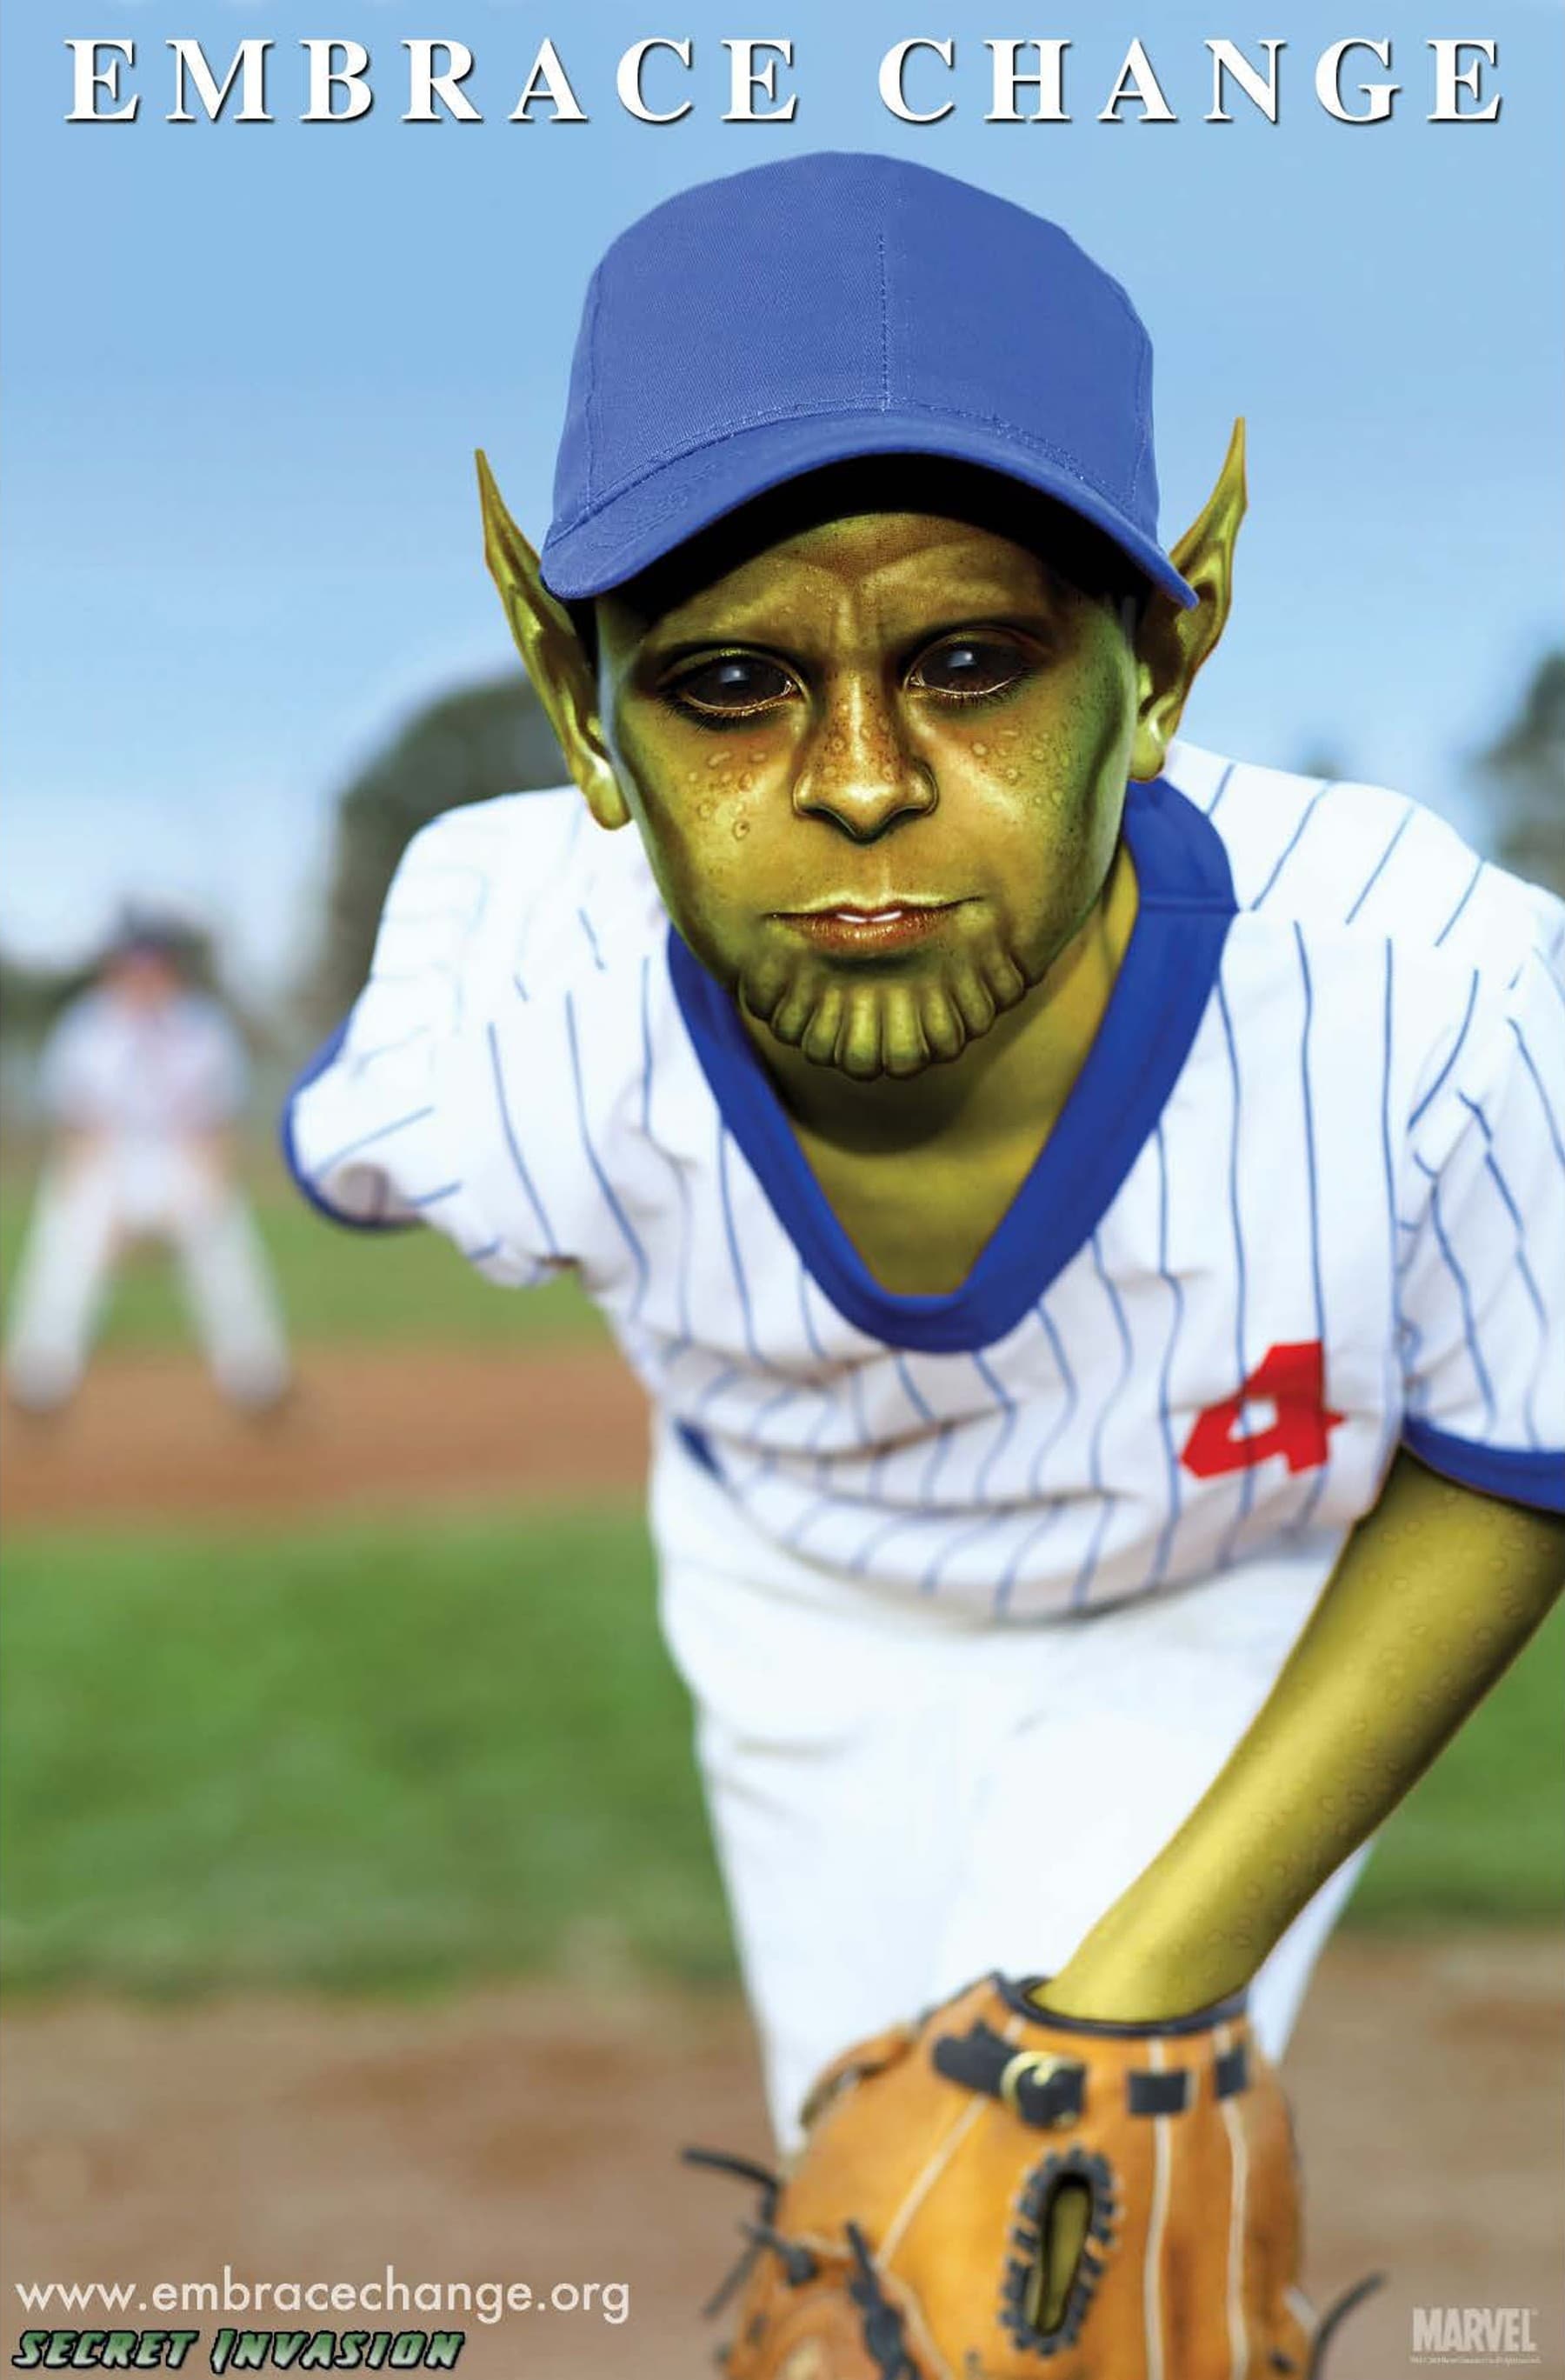 Embrace Change Stock Photo Promotional Image: Skrull Boy Plays Baseball